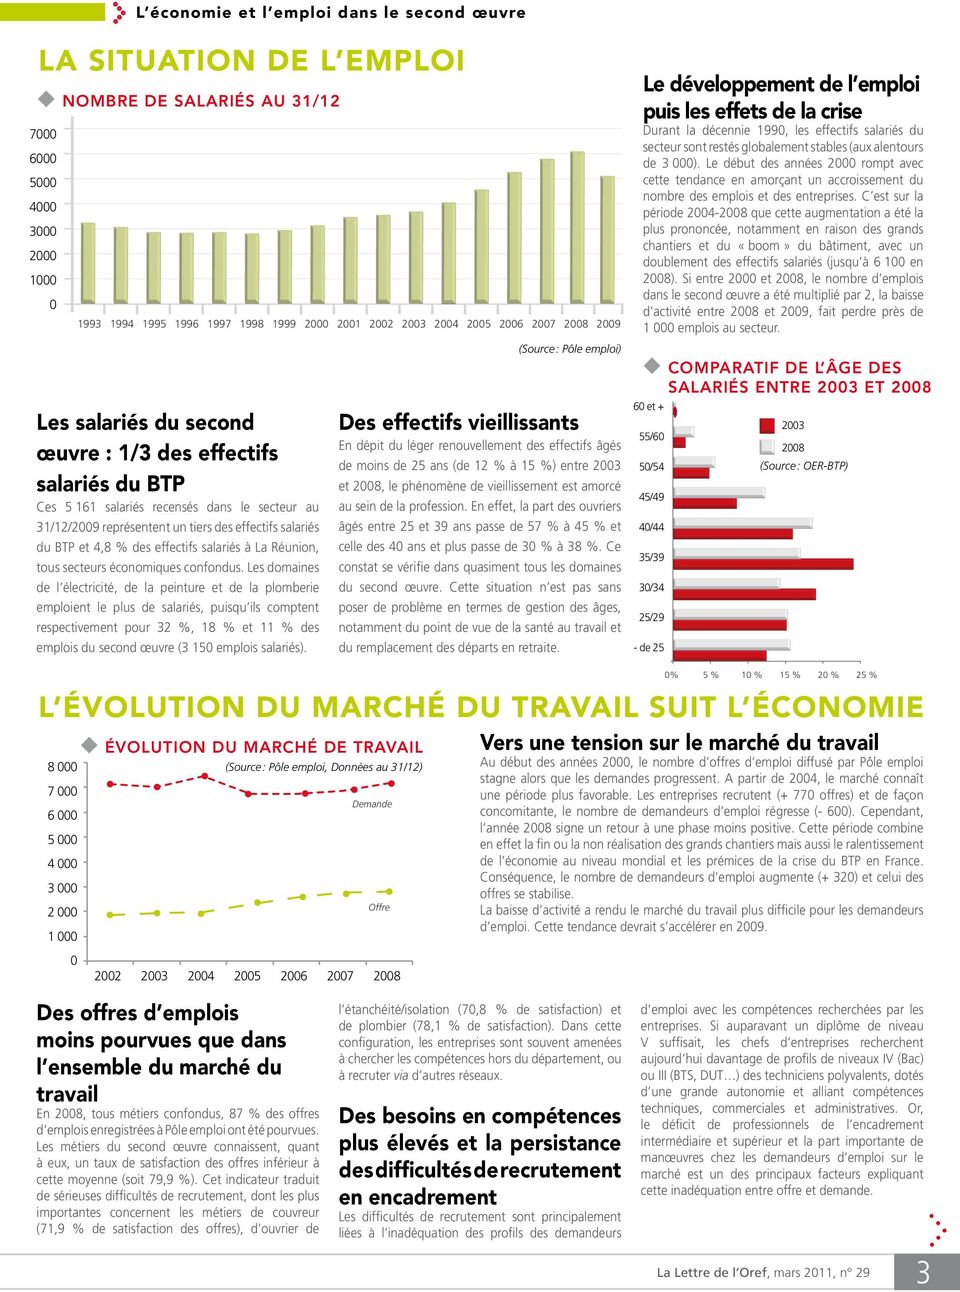 tiers des effectifs salariés du BTP et 4,8 % des effectifs salariés à La Réunion, tous secteurs 40/44 économiques confondus.